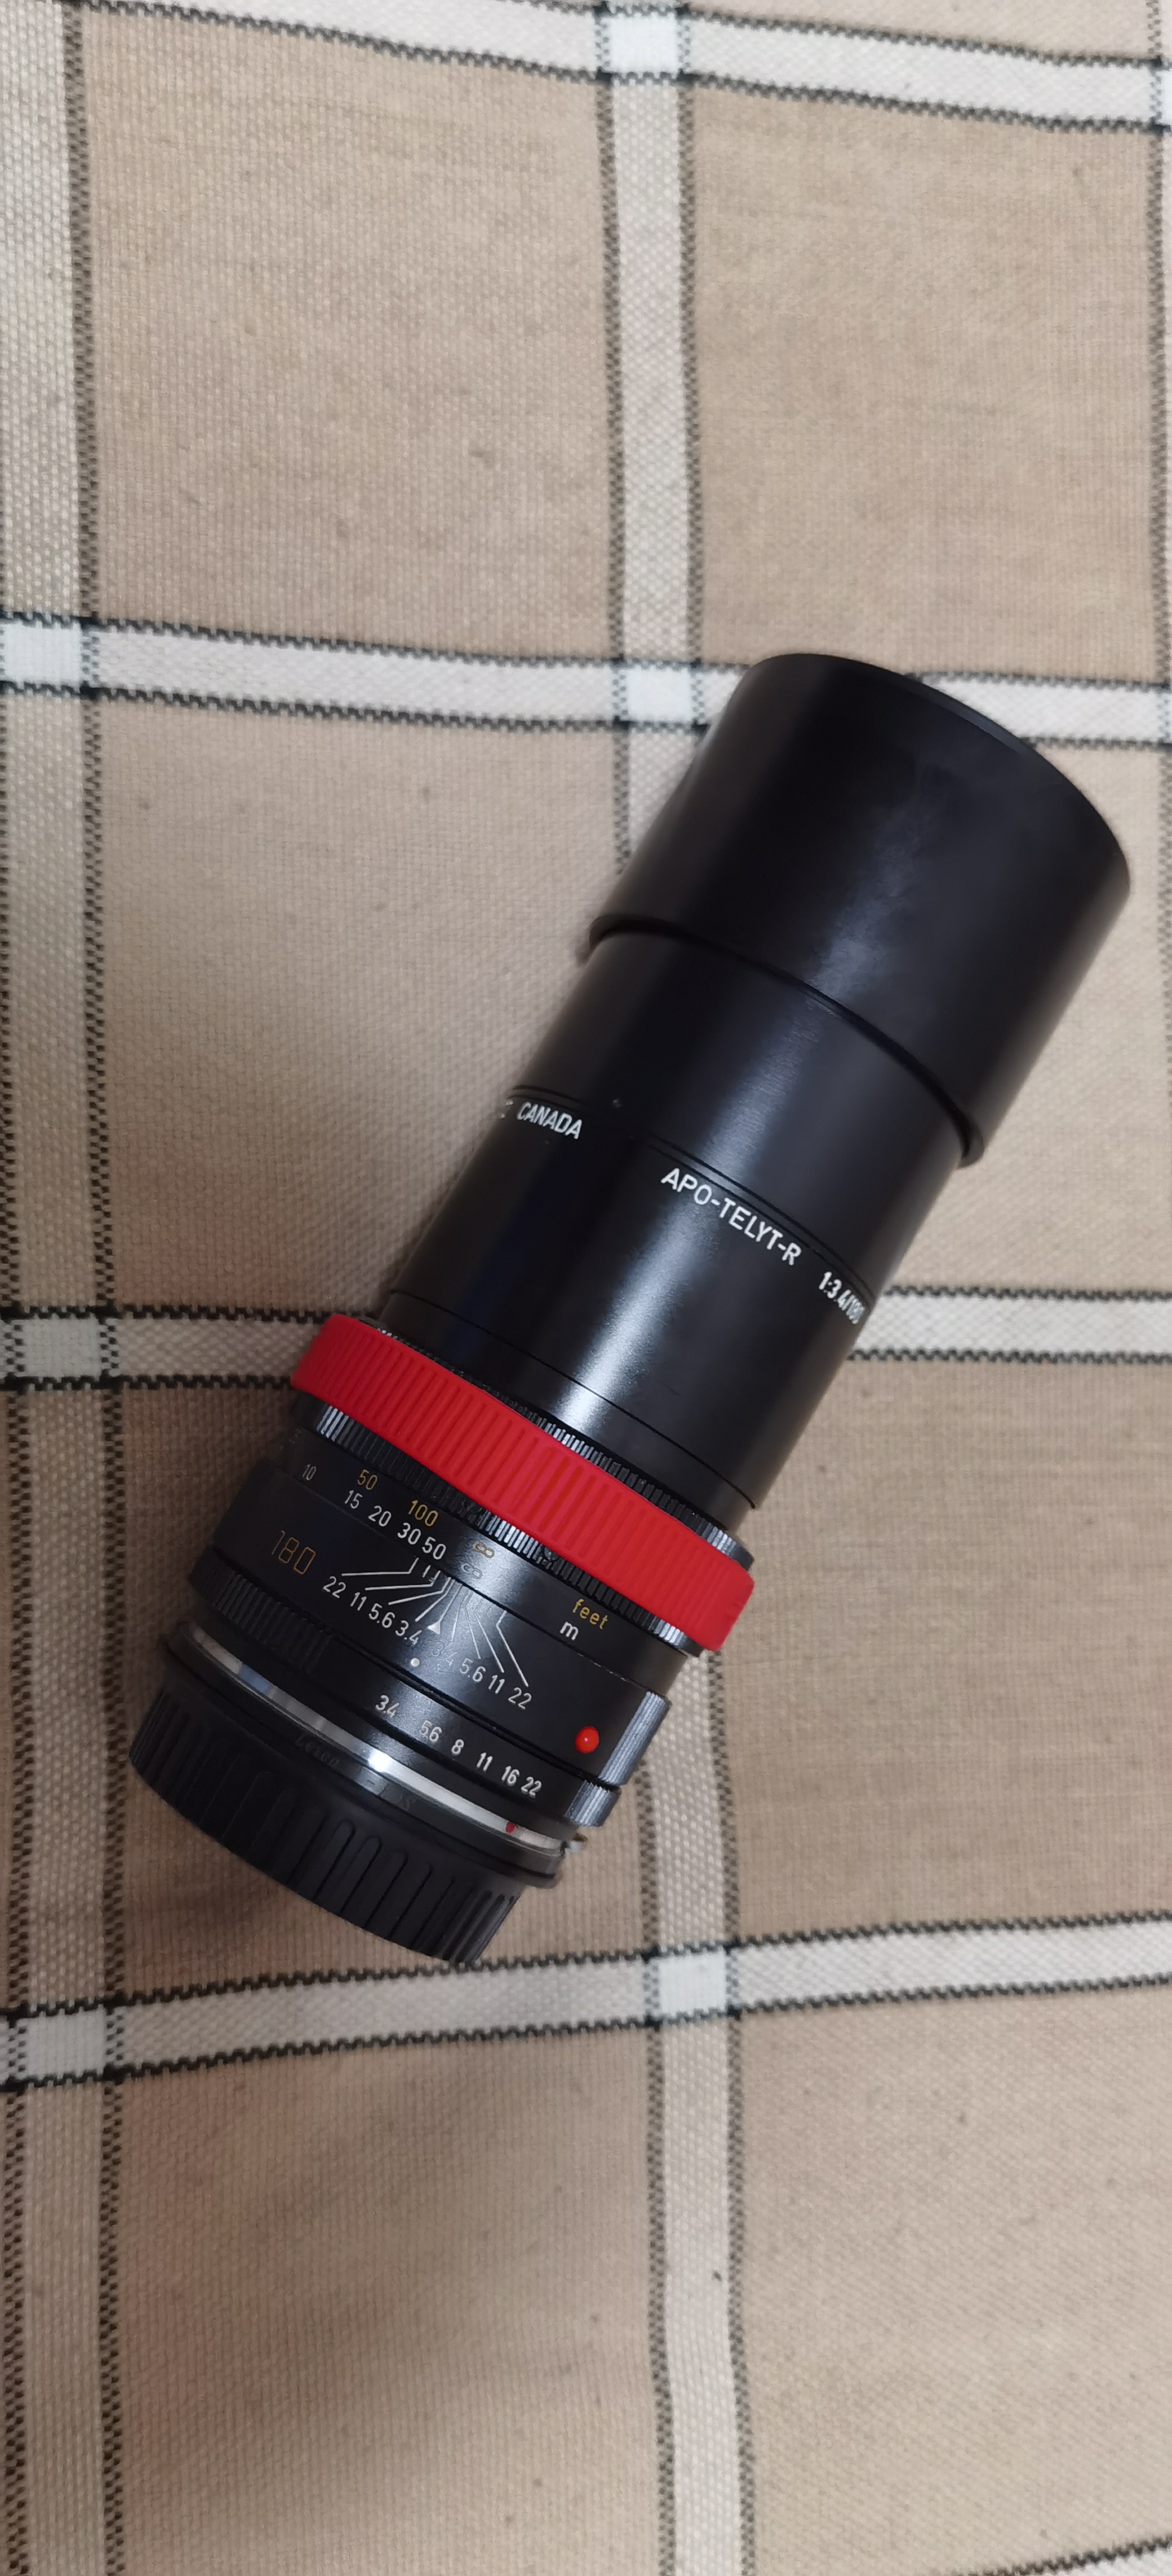 Leitz Canada APO-Telyt-R 180 mm f/ 3.4